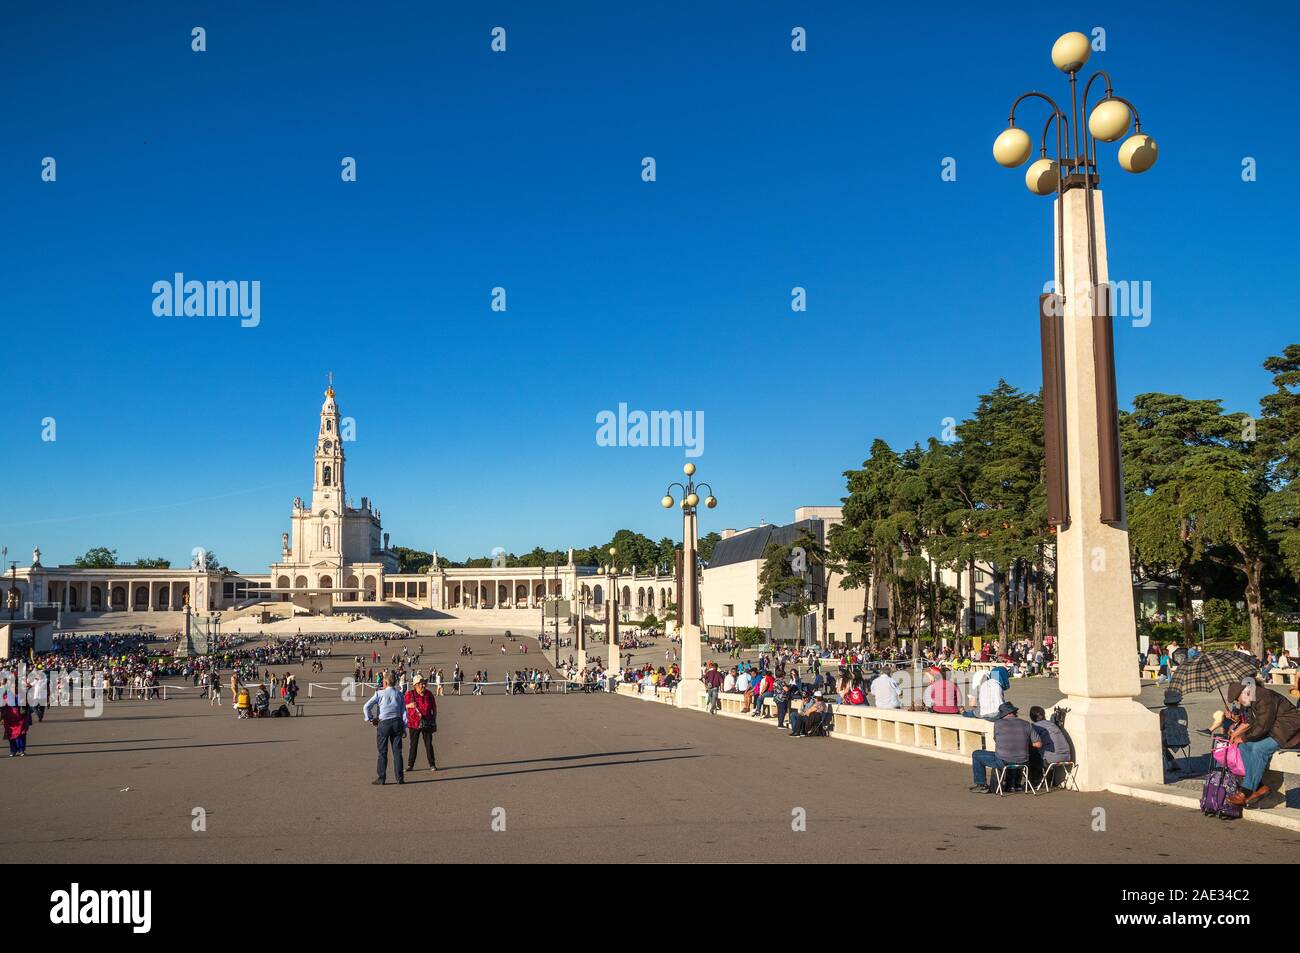 Fatima, Portugal - Mai 12, 2019: Blick auf das Heiligtum von Fatima und die Pilger warten auf die Prozession der Kerzen. Stockfoto